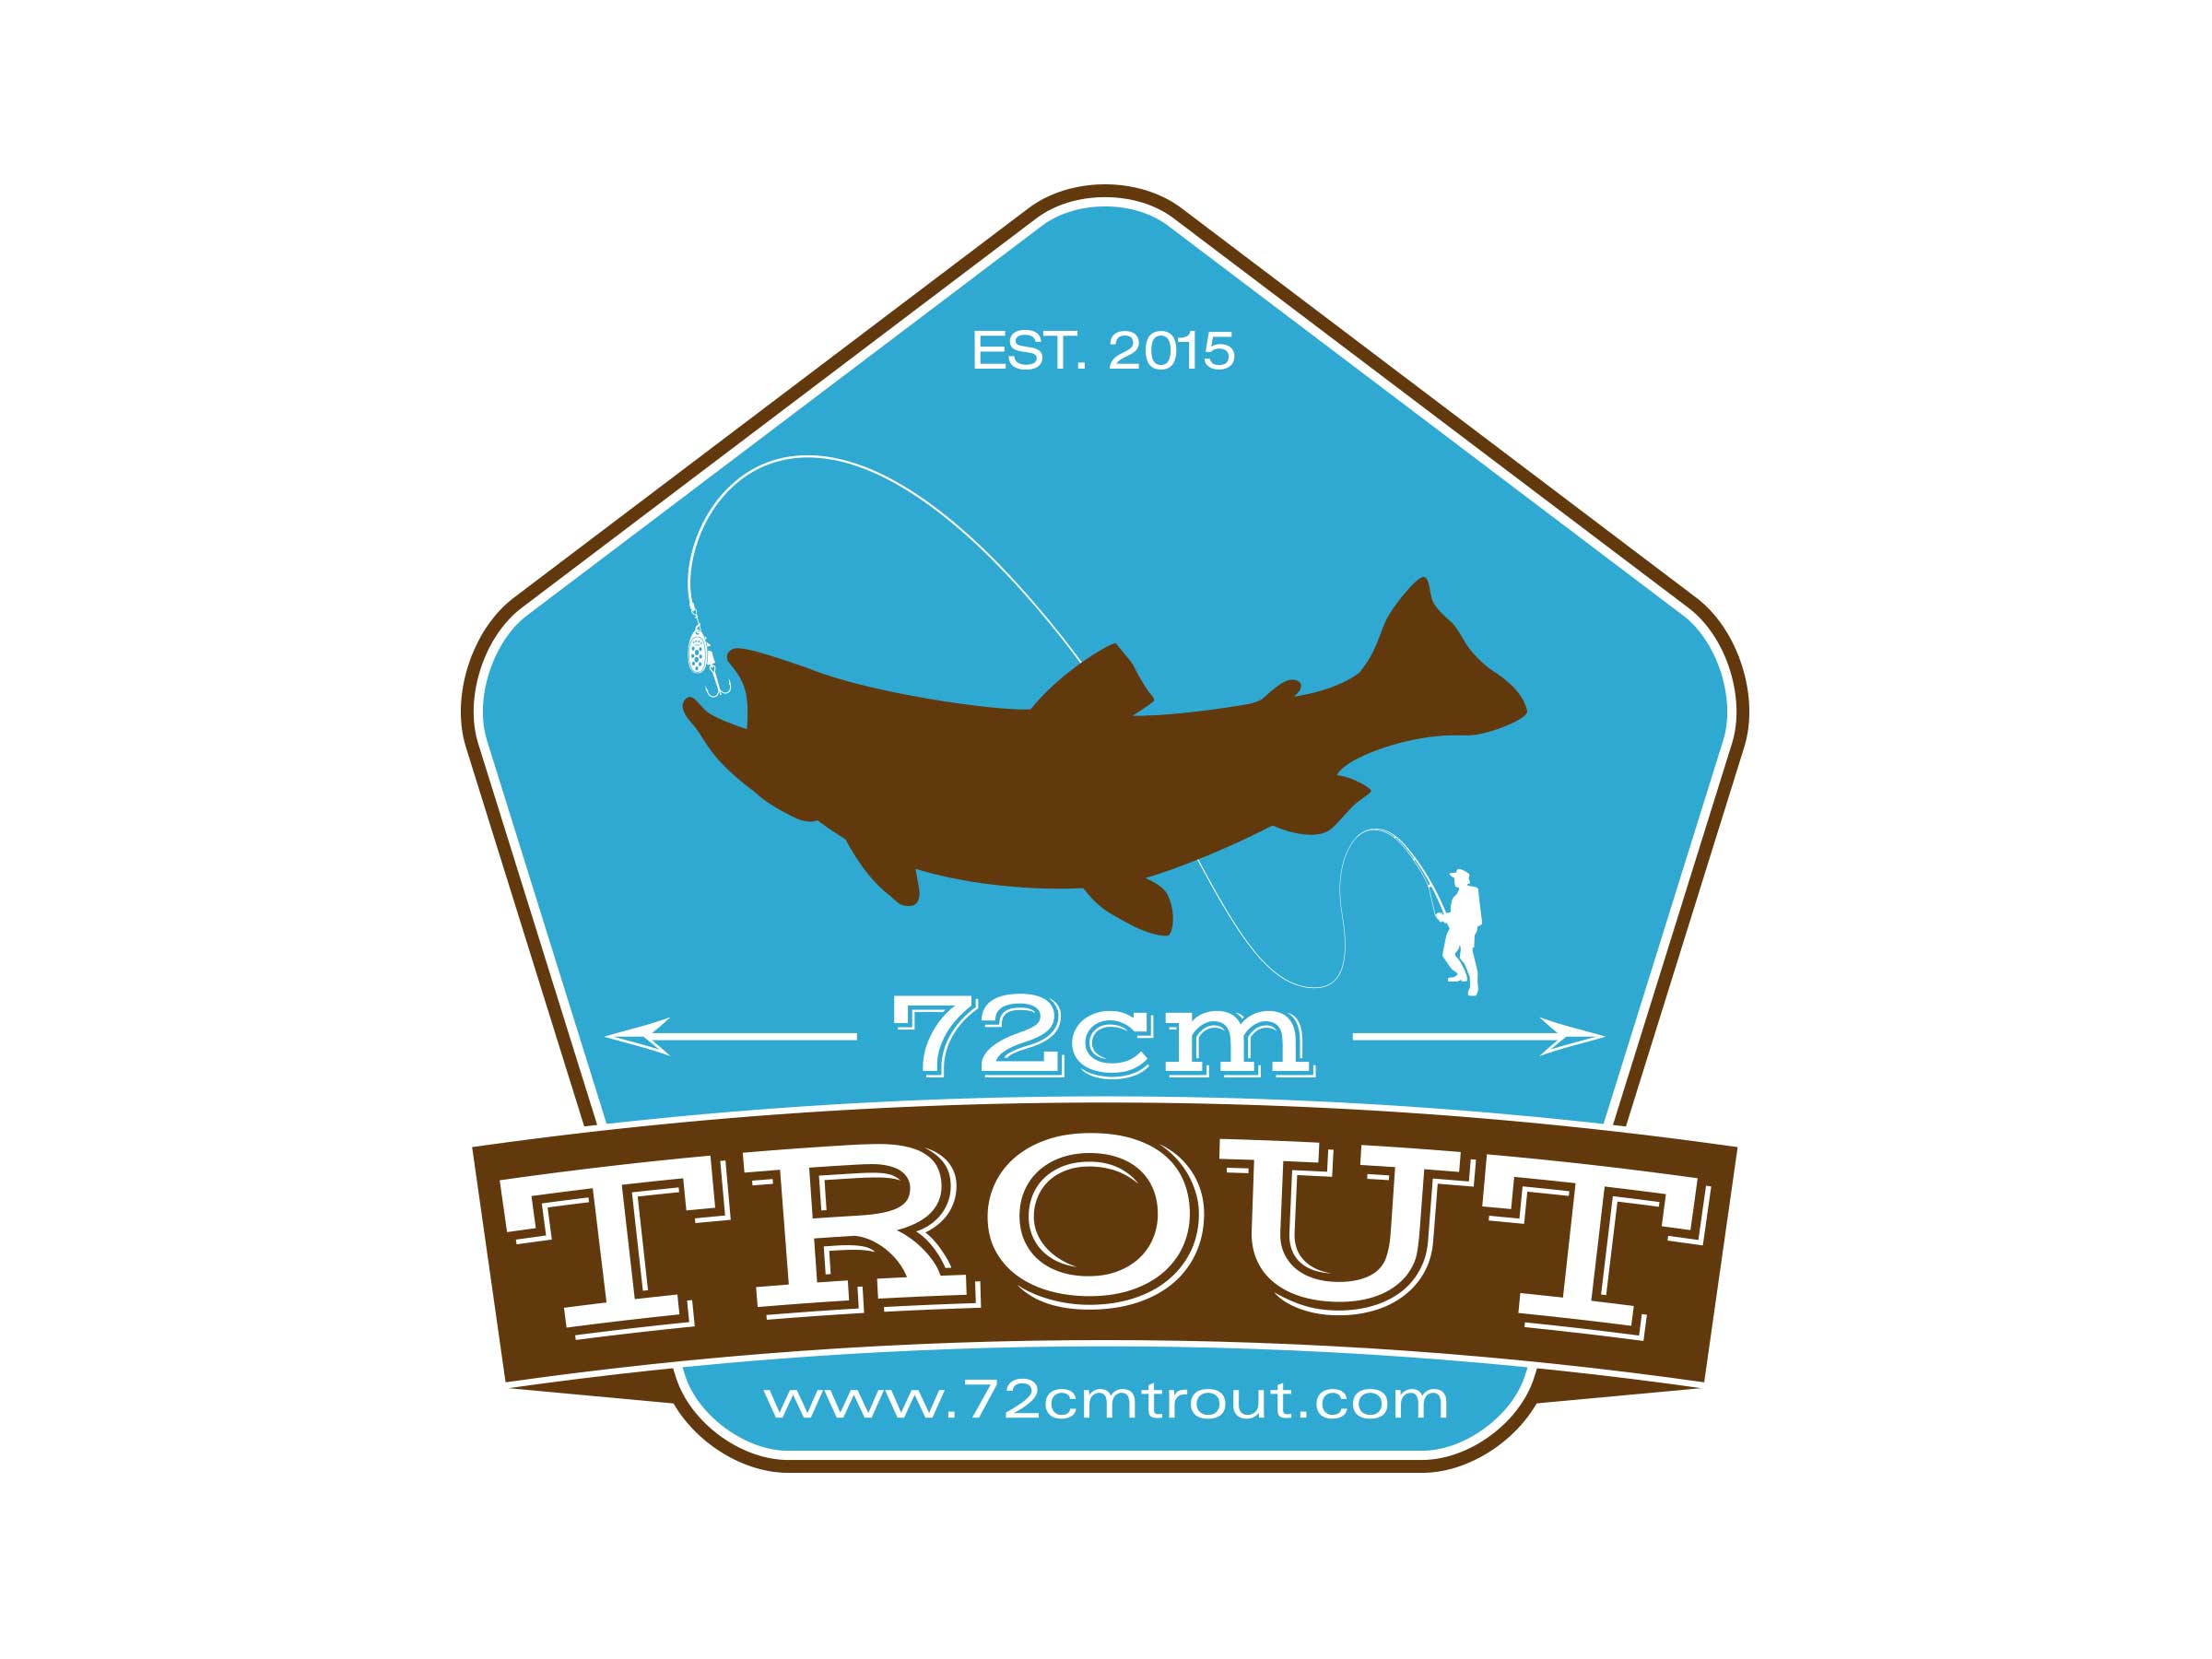 72cm-trout-2015-logo-03